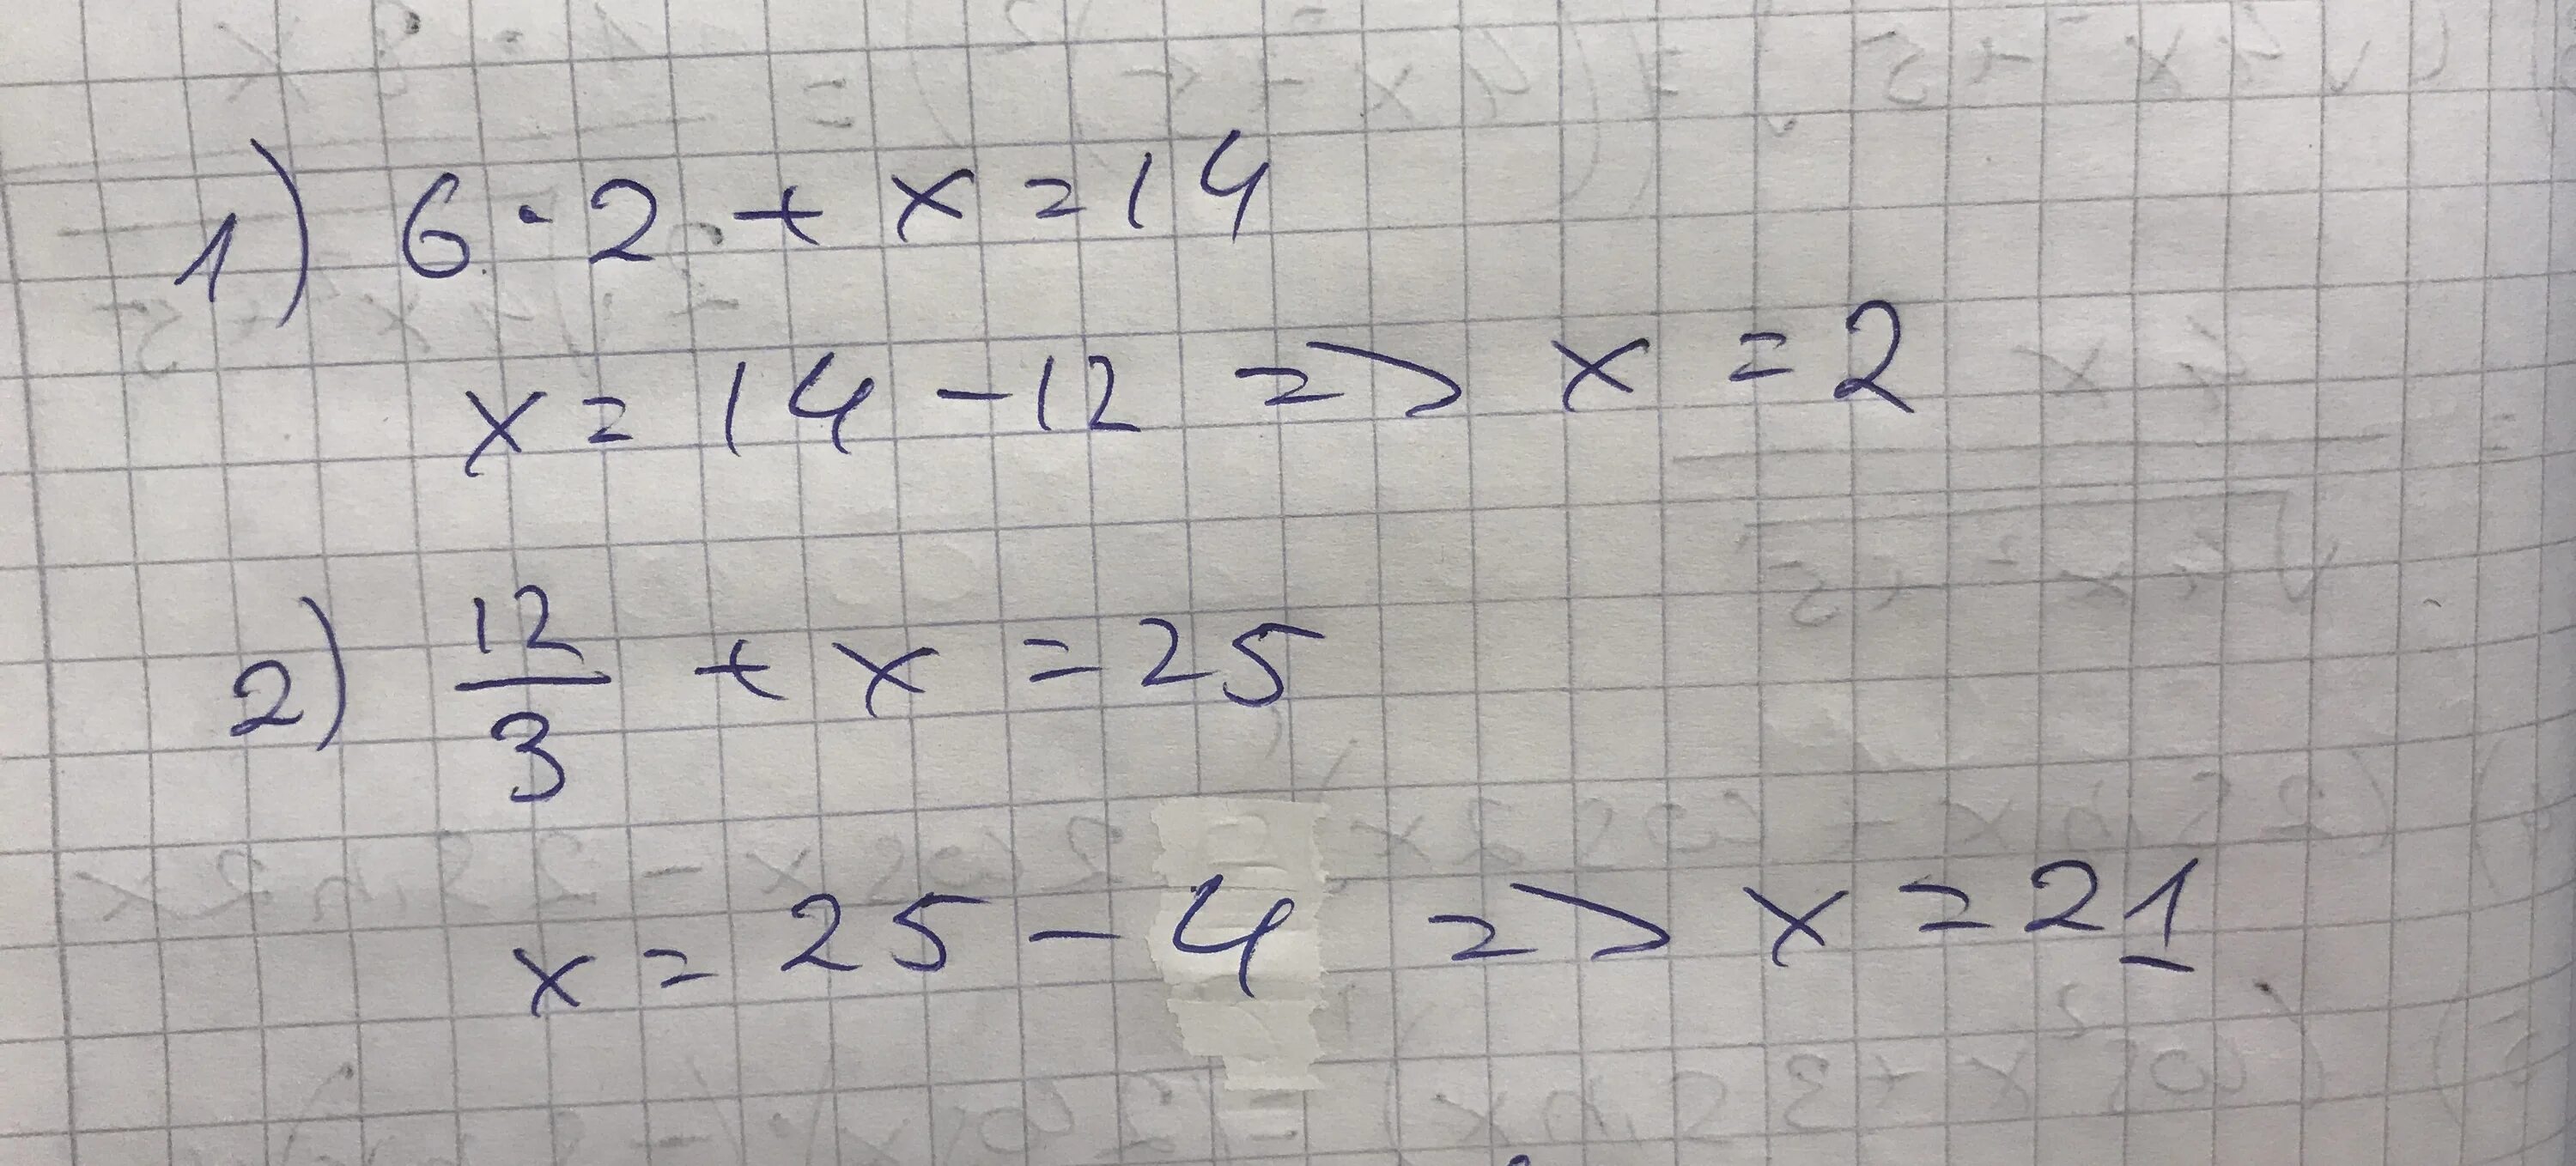 18 2 разделить на 12 6. Решение уравнения 12 разделить на Икс равно 3. Уравнение Икс разделить на 3 равно 6. Минус 2 Икс деленное на 5 и минус 2 Икс деленное на 3. Икс равно.